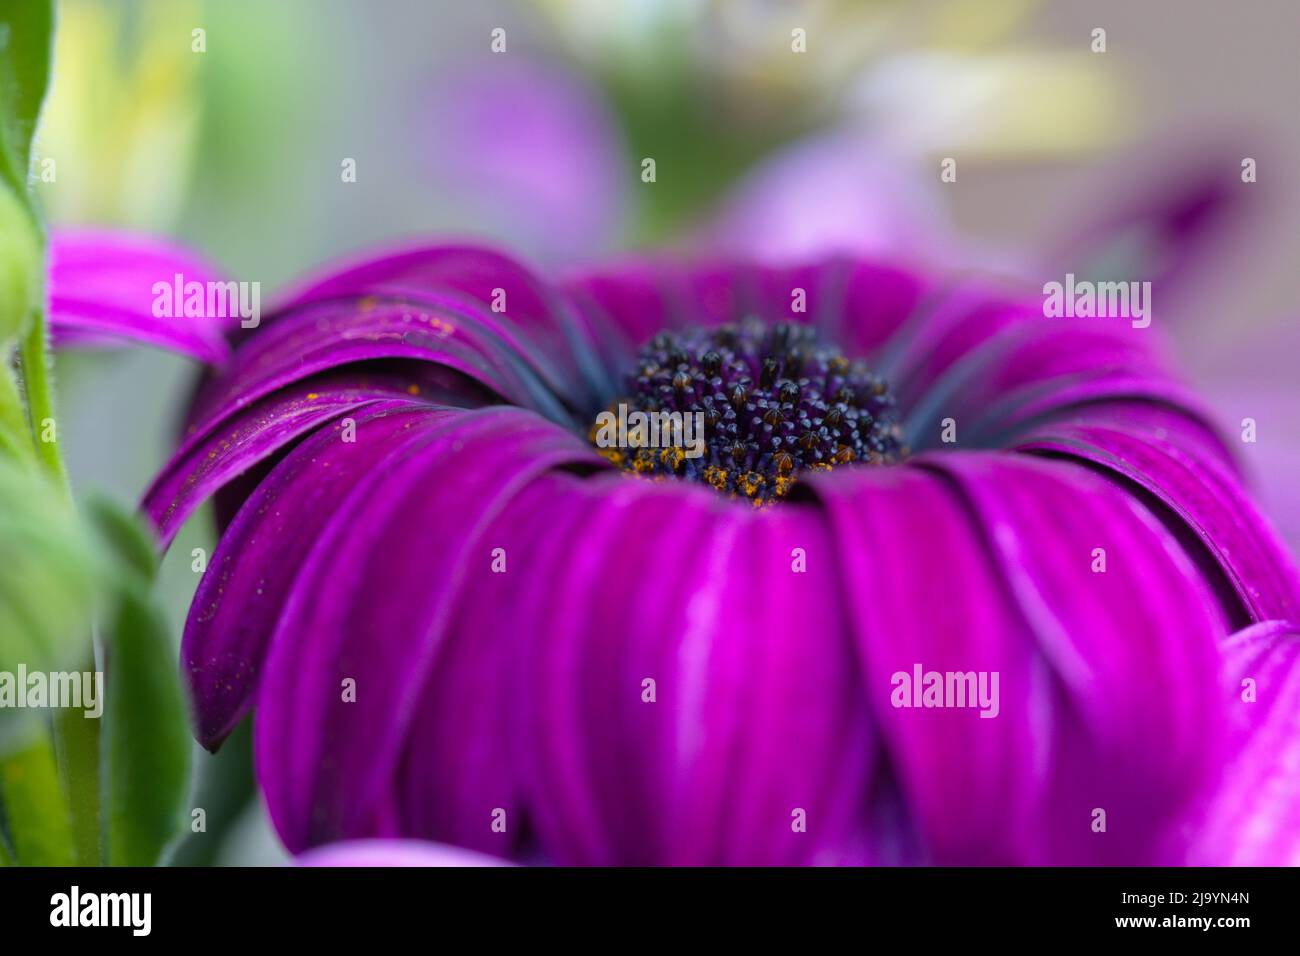 Macro photographie d'une fleur de jardin pourpre Banque D'Images